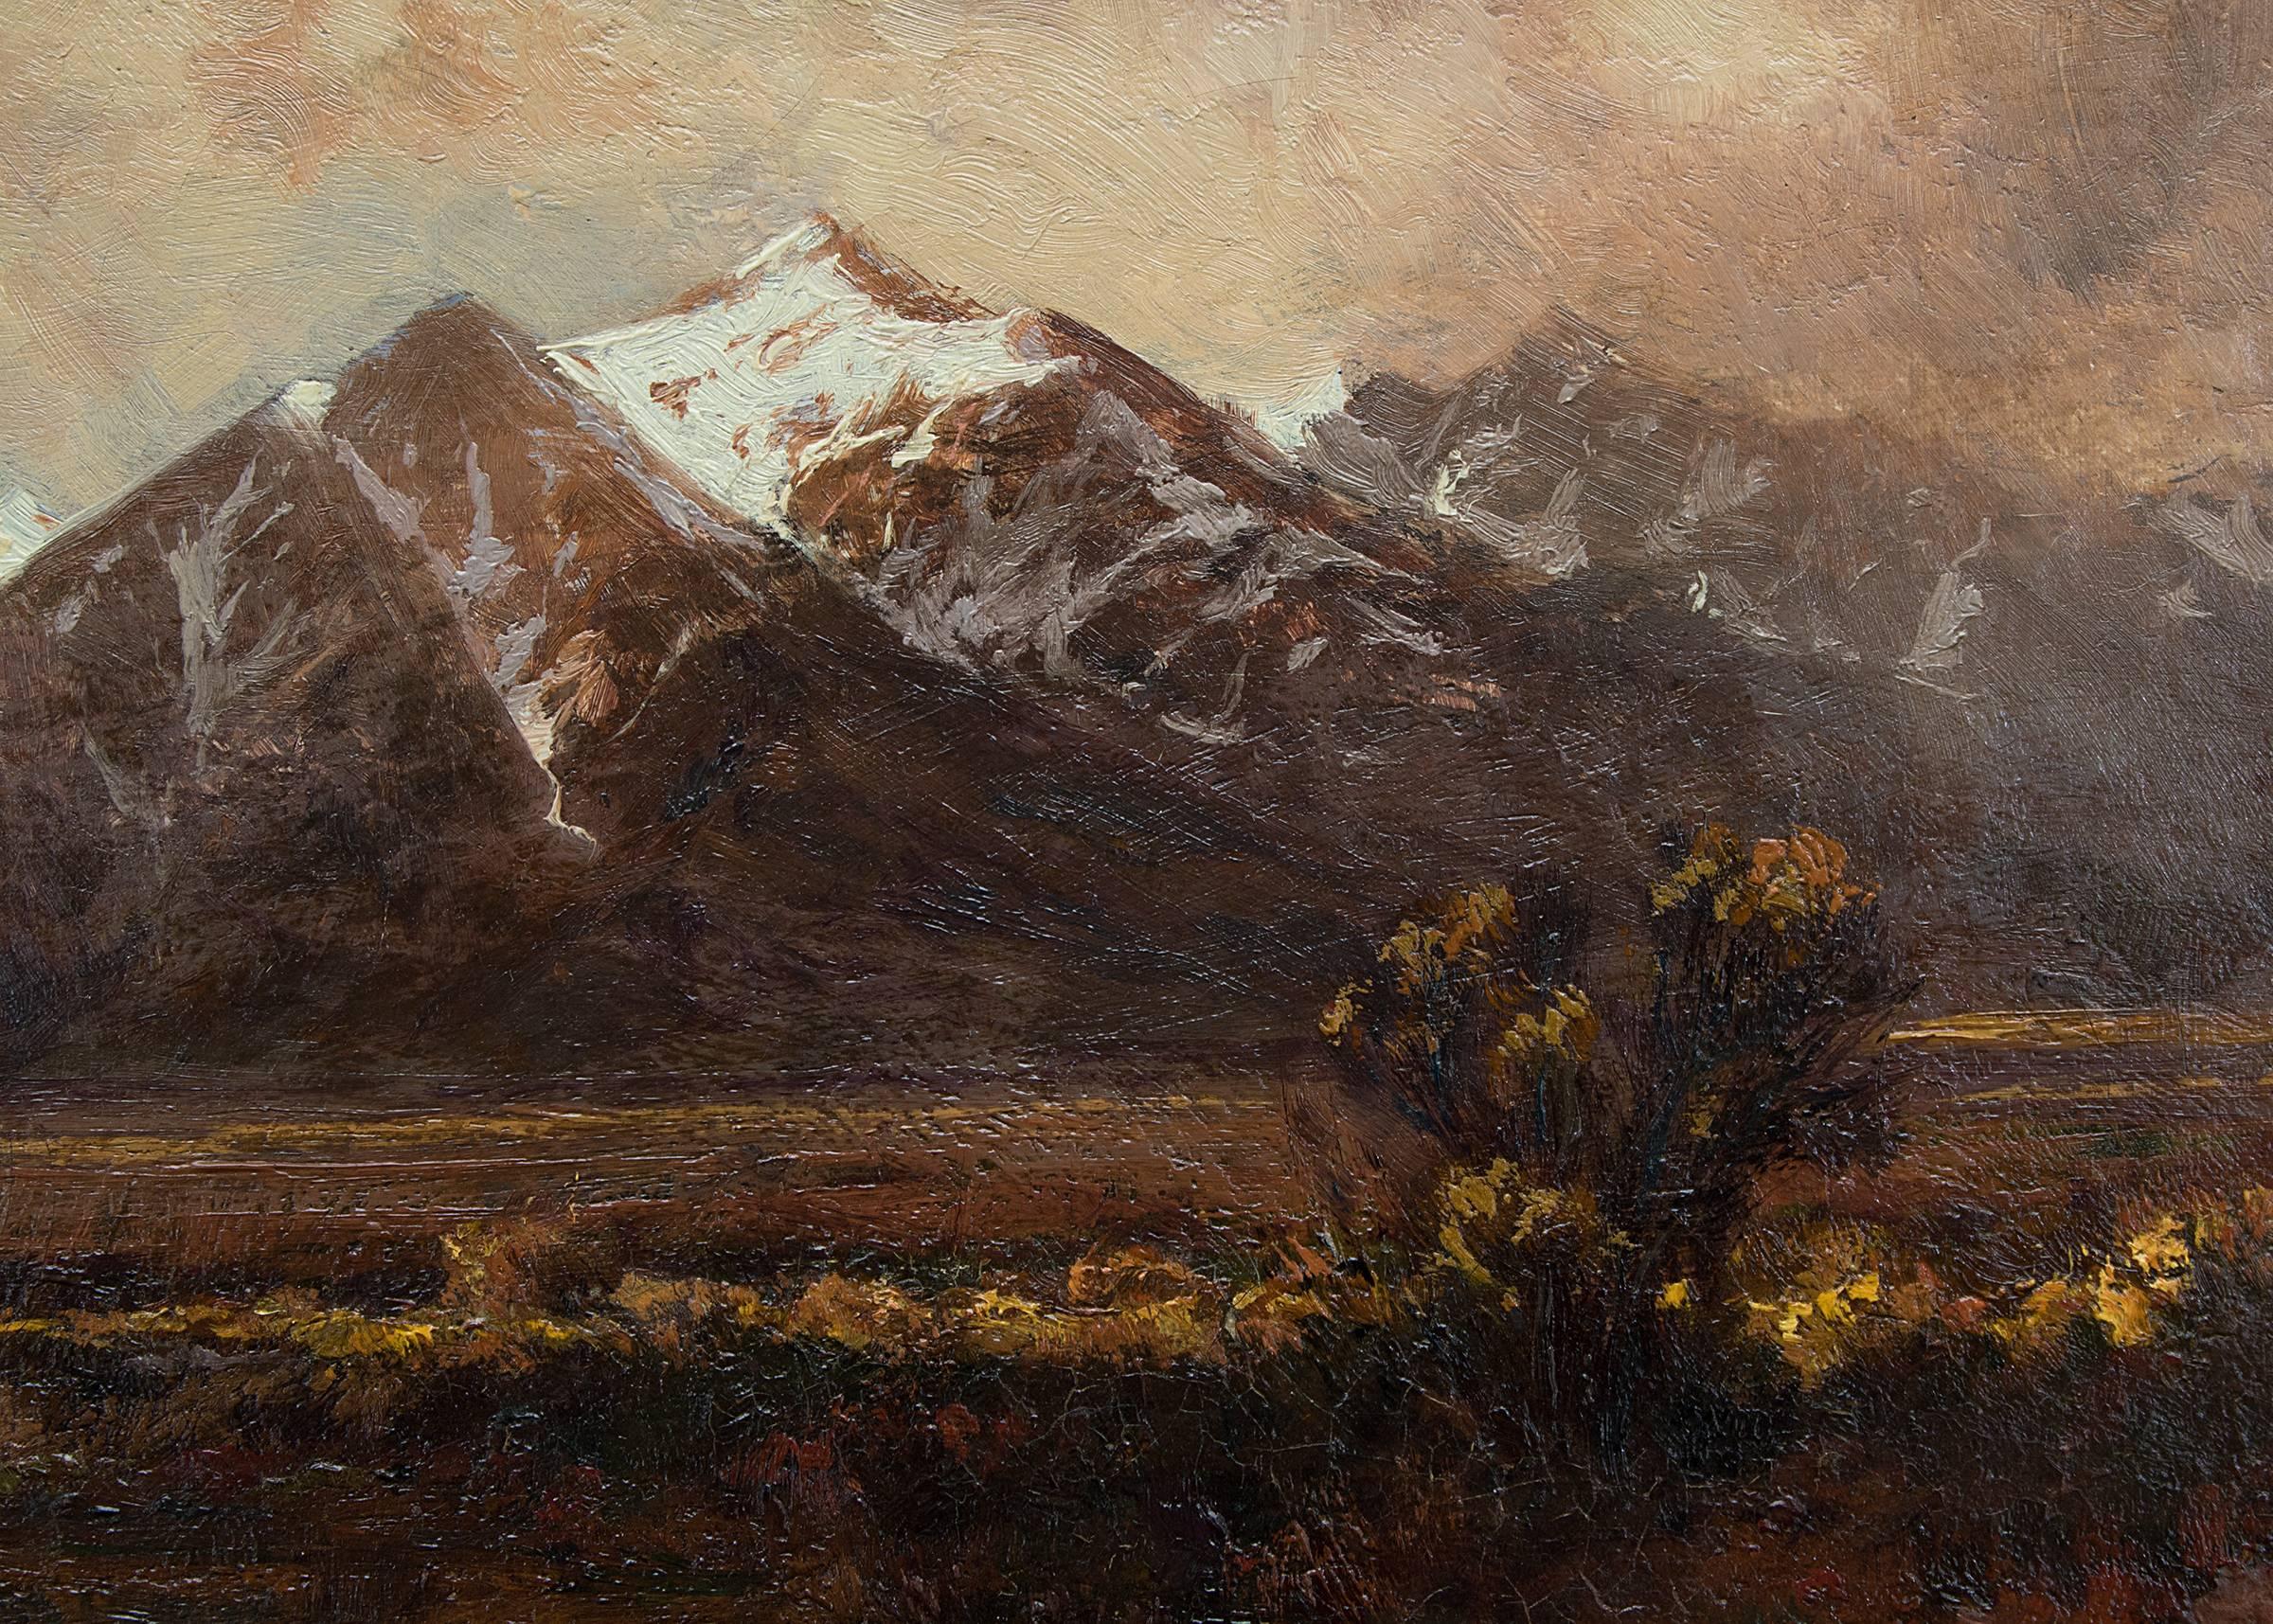 Untitled (Longs Peak, Mount Meeker) - Brown Figurative Painting by Charles Partridge Adams